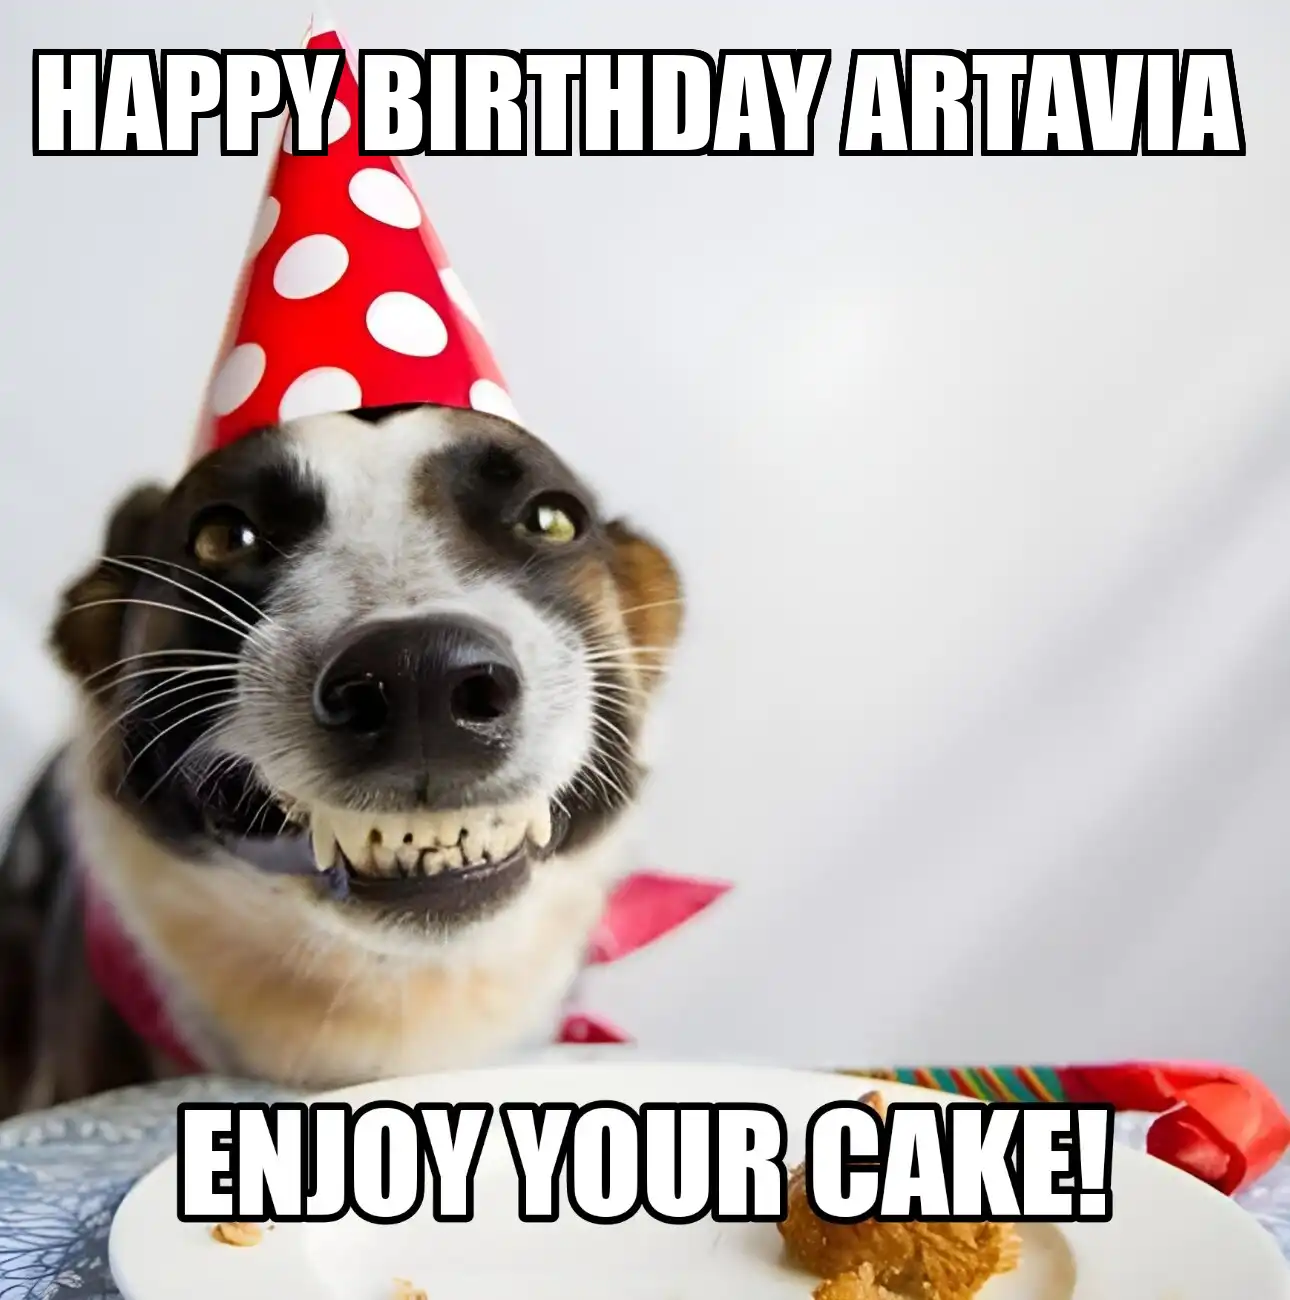 Happy Birthday Artavia Enjoy Your Cake Dog Meme